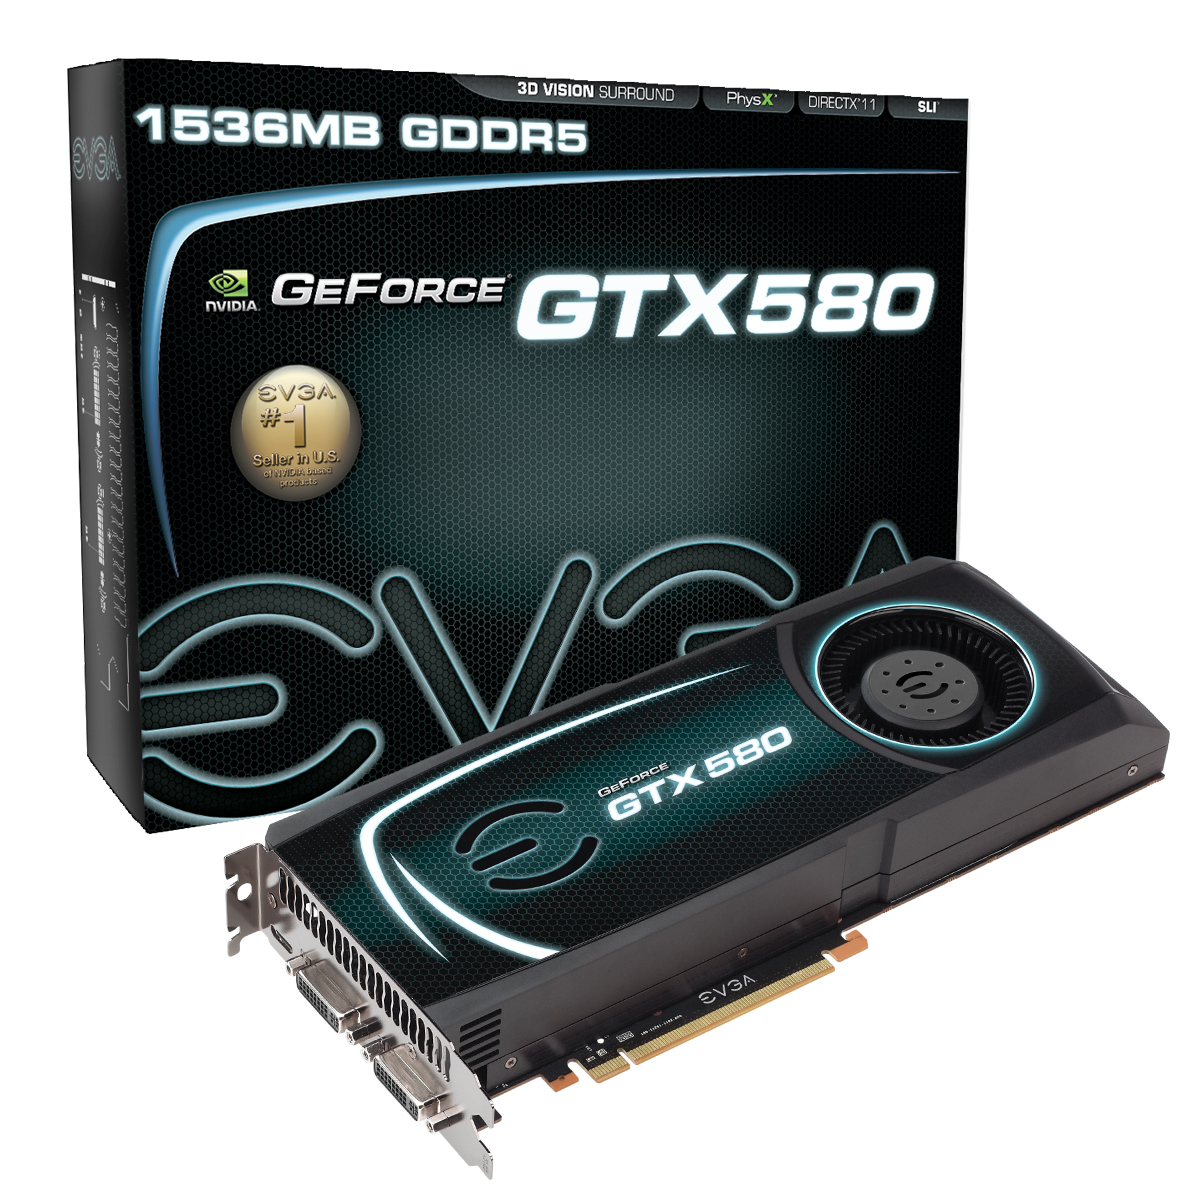 EVGA GeForce GTX 580 large image 0